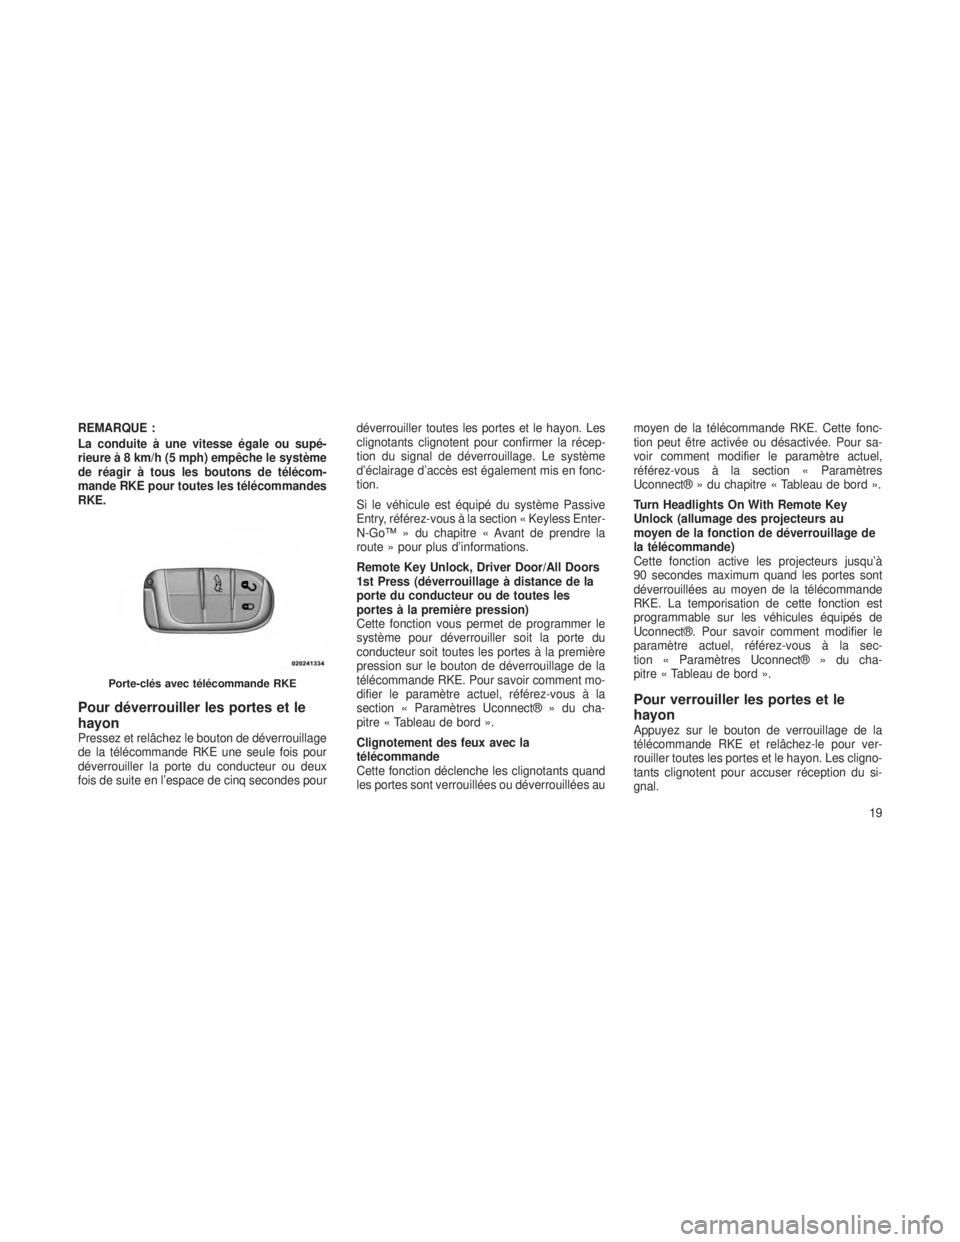 JEEP GRAND CHEROKEE 2013  Notice dentretien (in French) REMARQUE :
La conduite à une vitesse égale ou supé-
rieure à 8 km/h (5 mph) empêche le système
de réagir à tous les boutons de télécom-
mande RKE pour toutes les télécommandes
RKE.
Pour d�